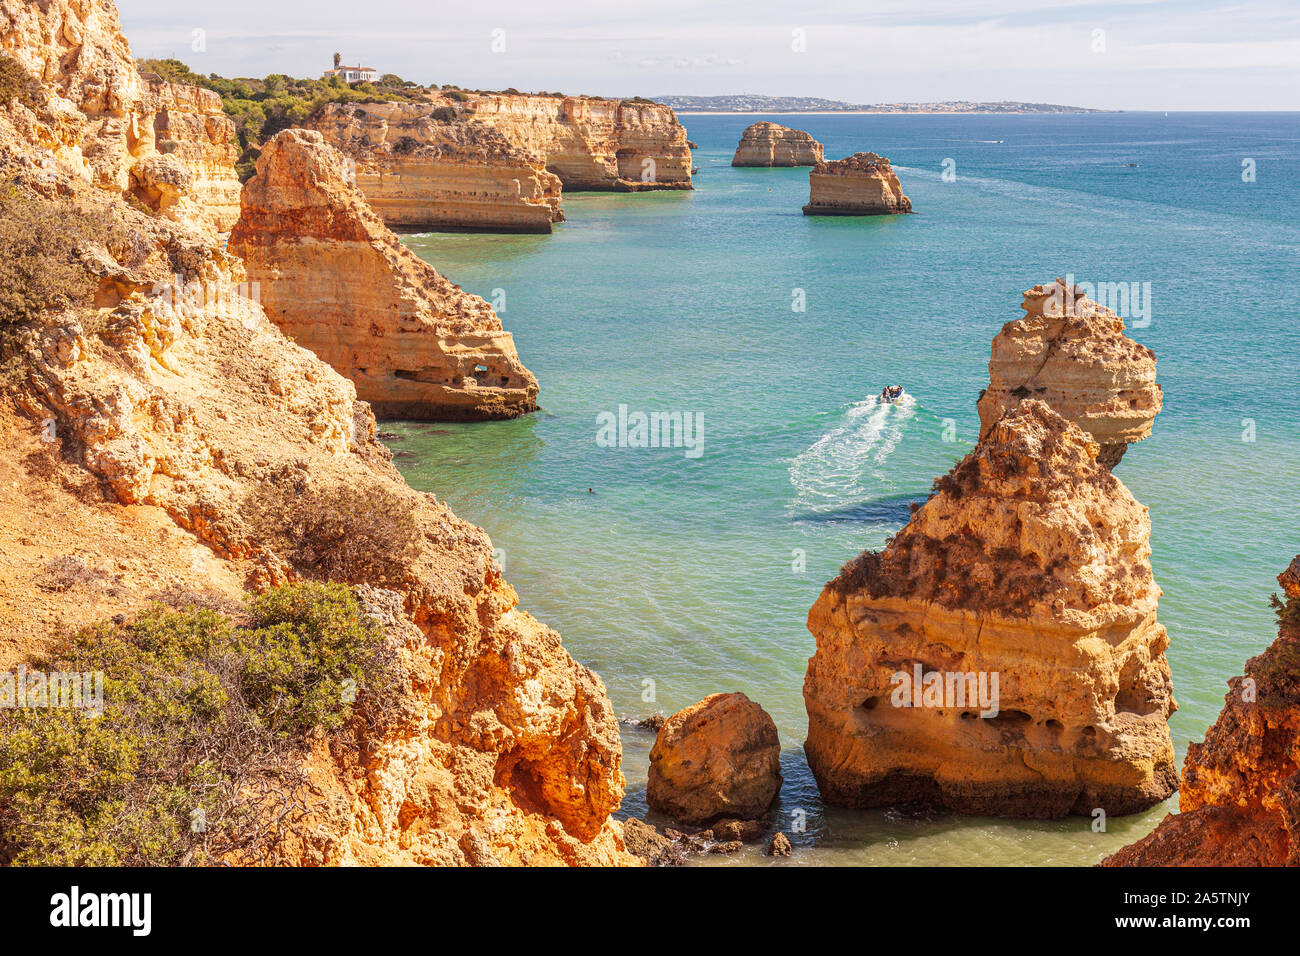 Praia da Marinha, robuste côte rocheuse de grès, formations rocheuses dans la mer, Algarve, Portugal Banque D'Images